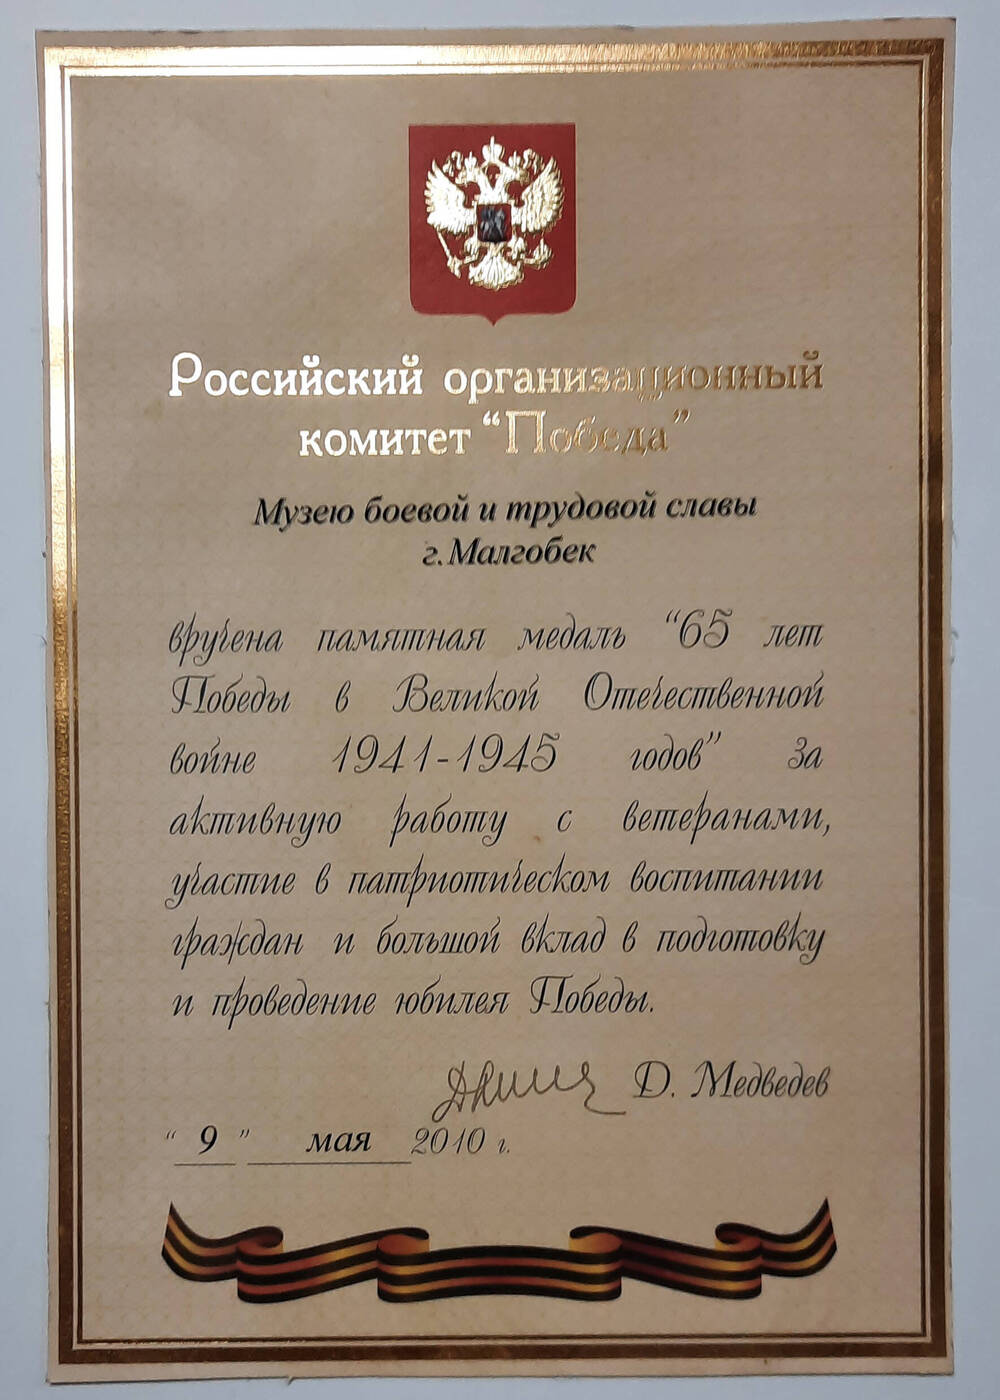 Приказ о награждении Малгобекского музея медалью 65 лет победы от оргкомитета Победа